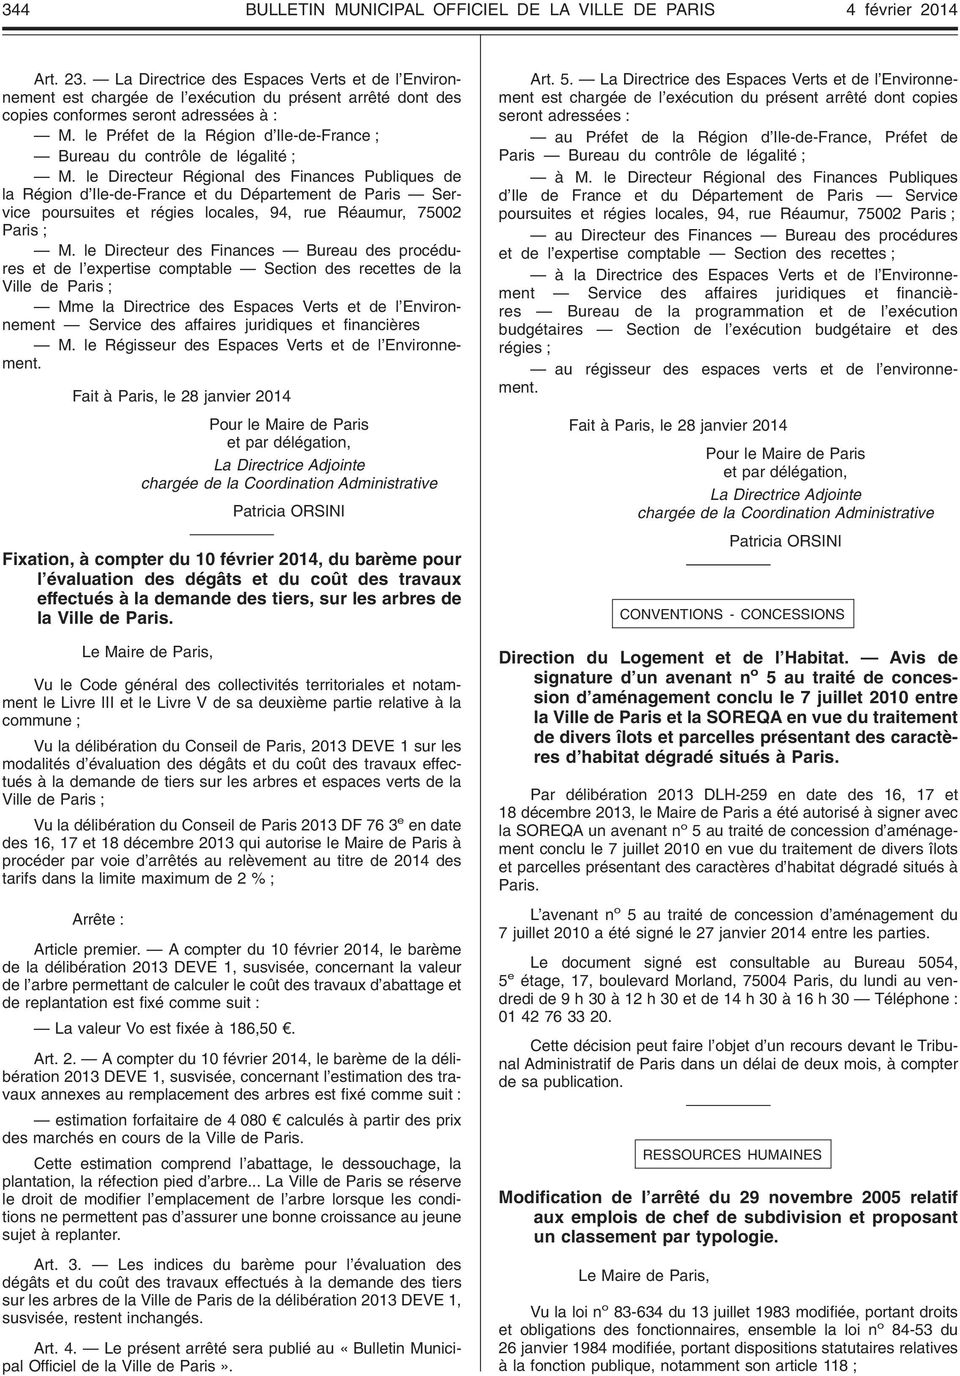 le Préfet de la Région d Ile-de-France ; Bureau du contrôle de légalité ; M.